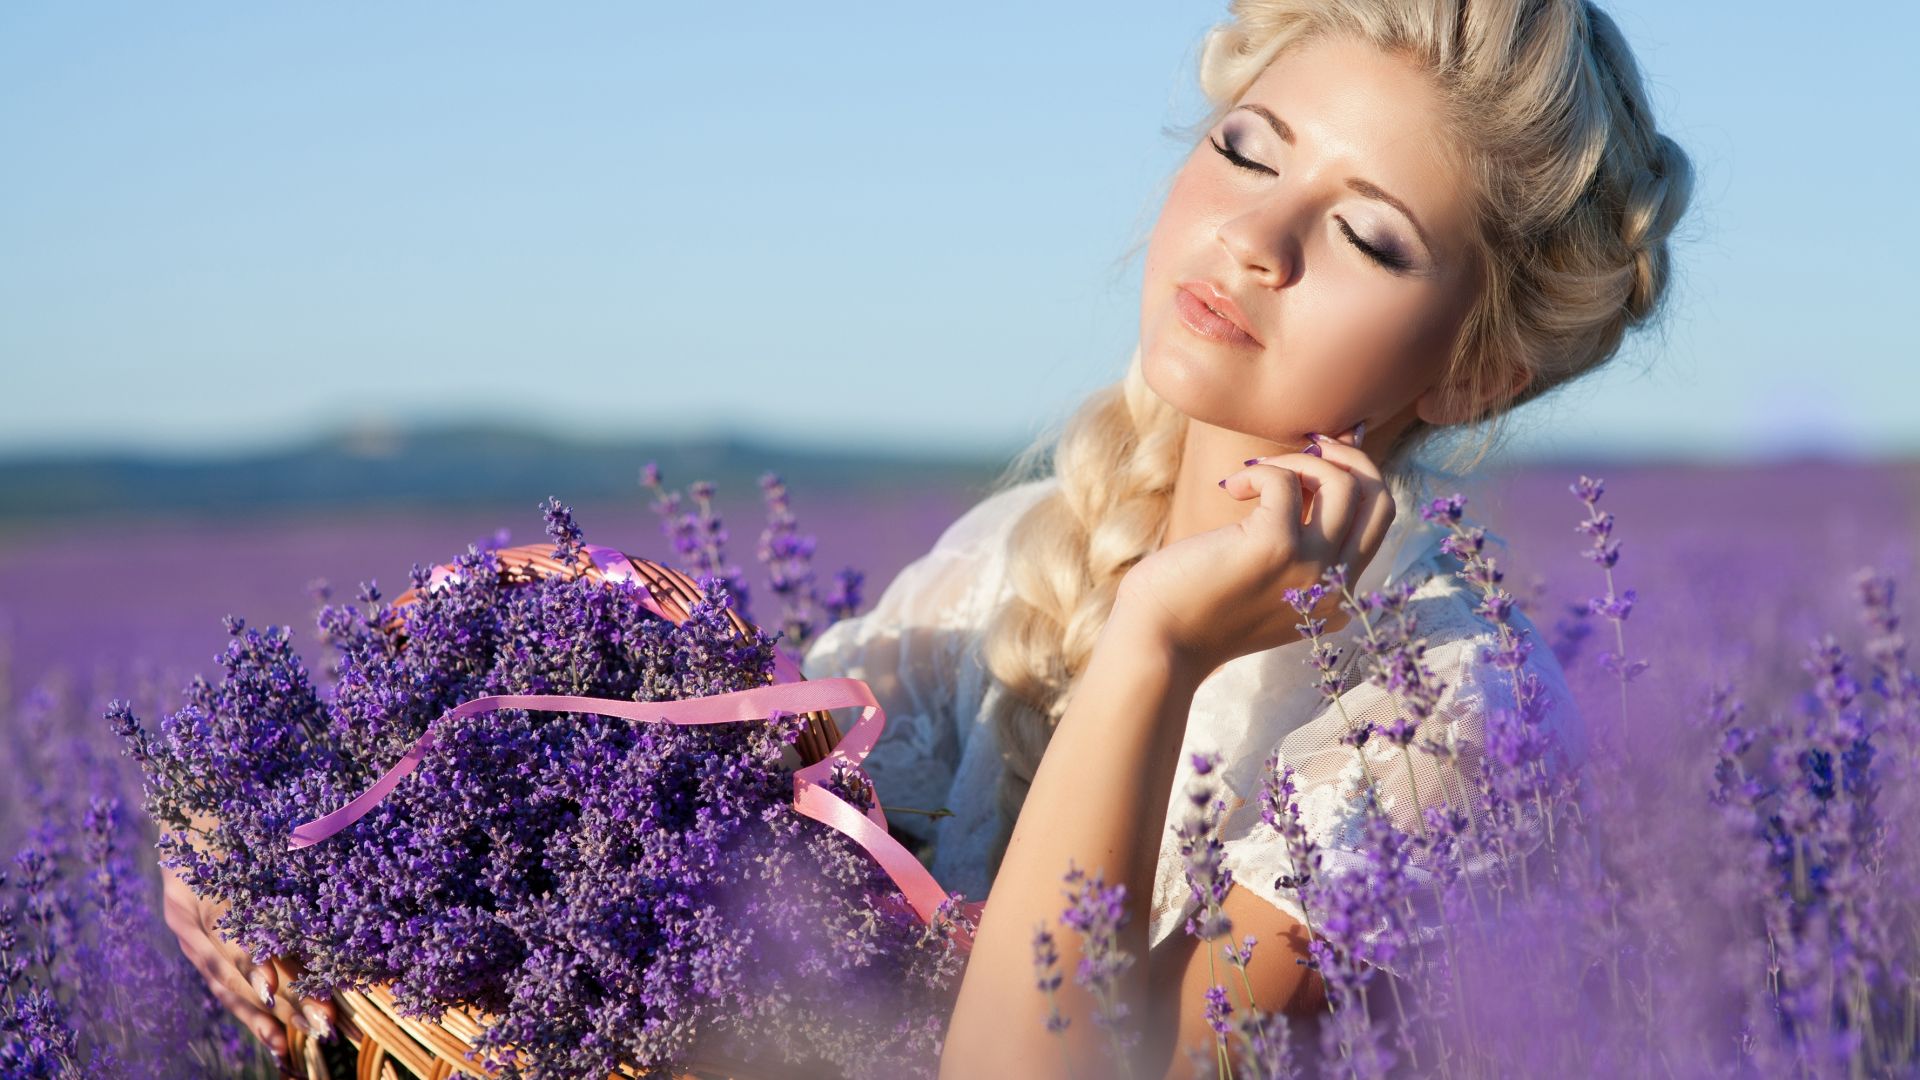 Wallpaper Closed eyes, girl, model, lavender, flowers